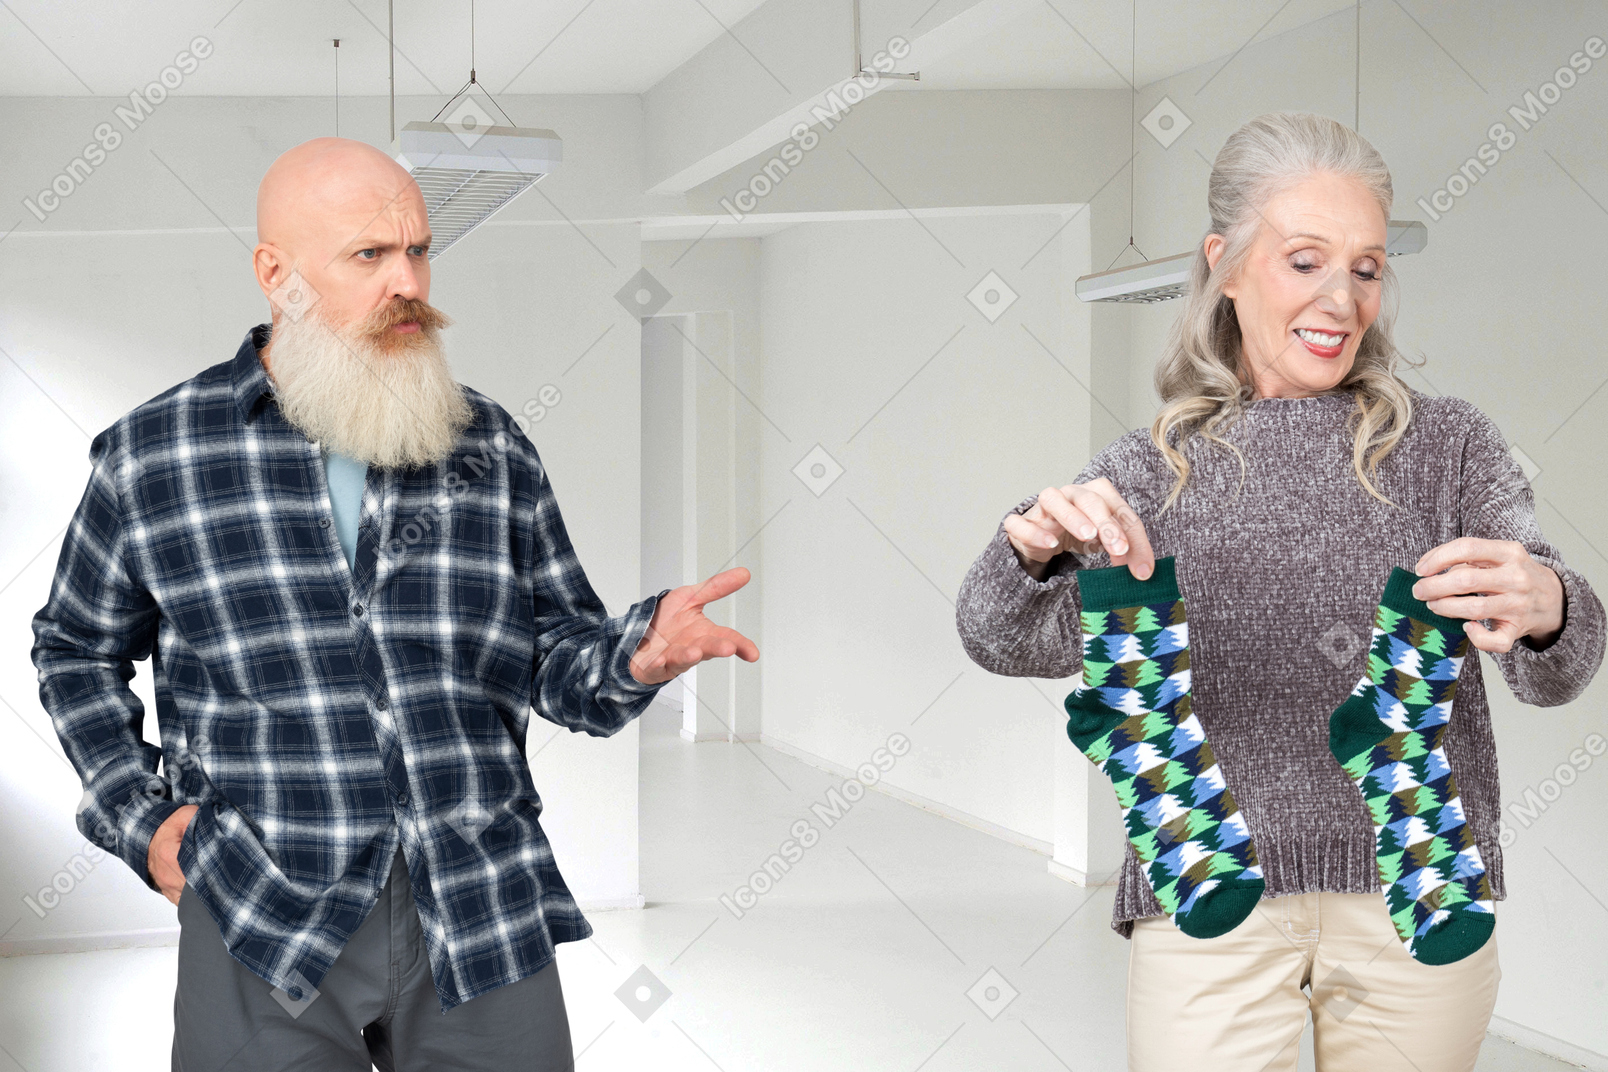 Un viejo calvo con barba gris mirando a una anciana asombrada mientras sostiene un par de calcetines verdes en sus manos